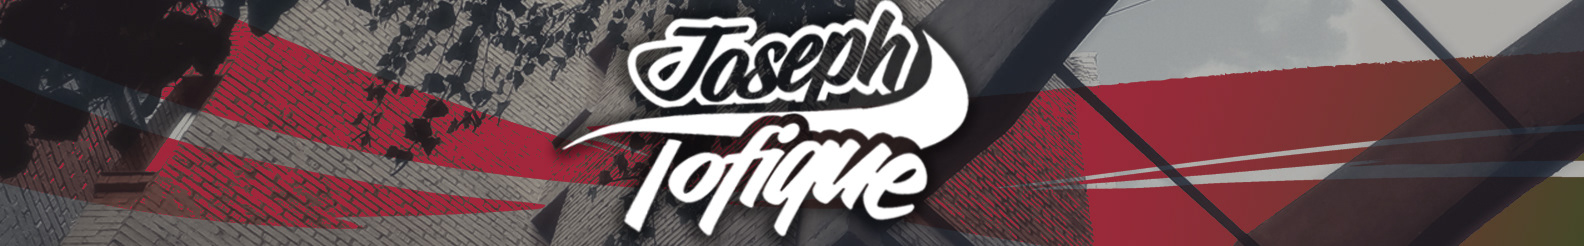 Tofique Joseph's profile banner